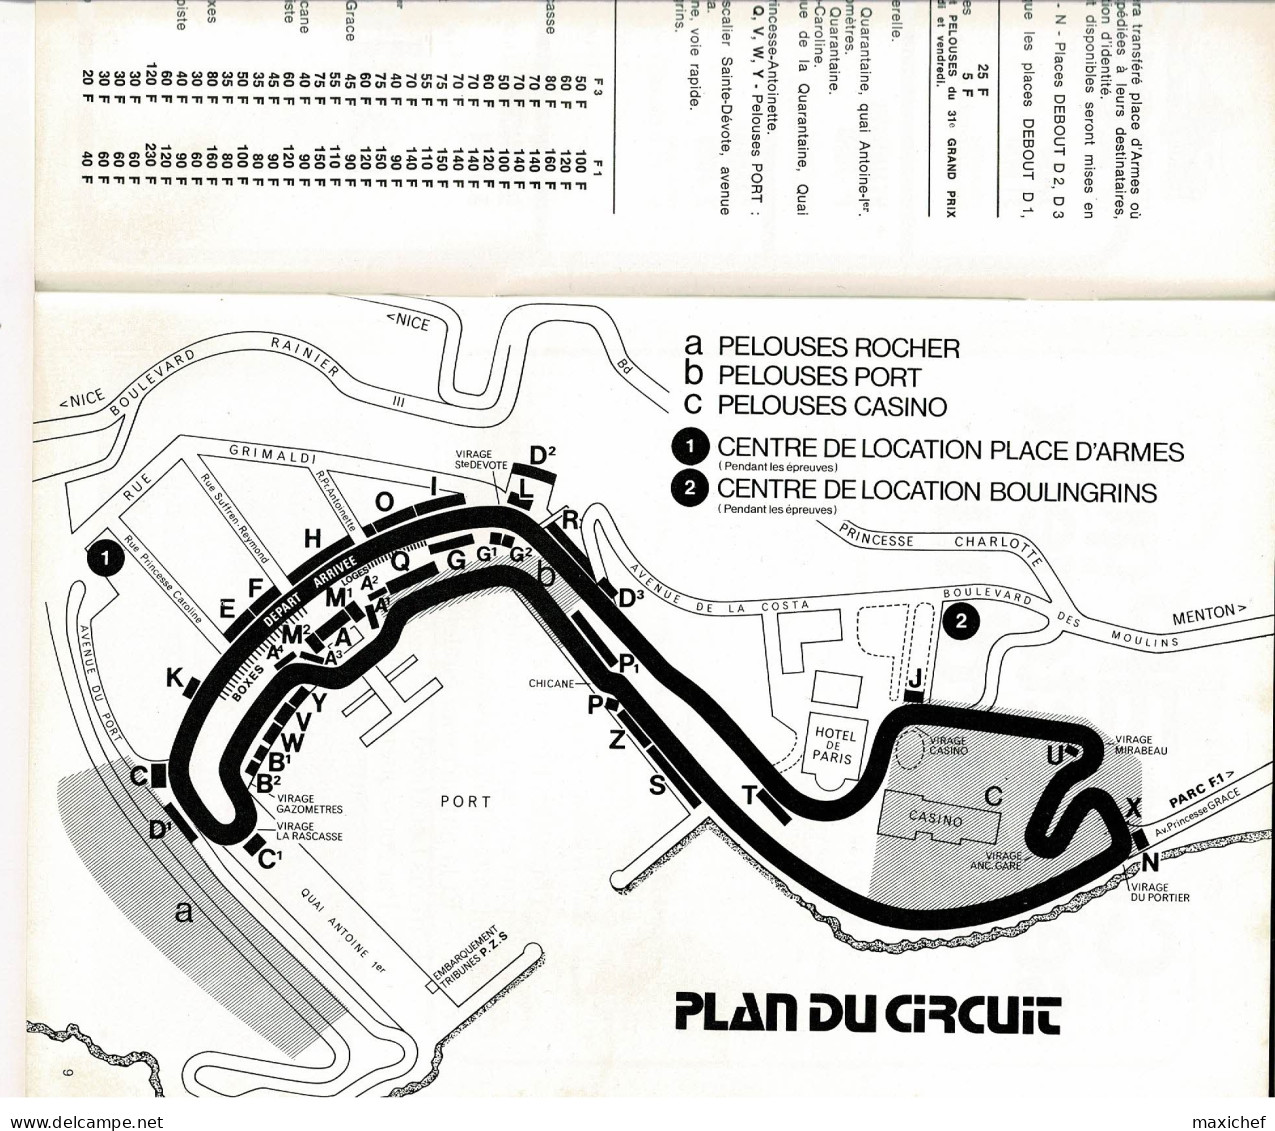 31e Grand Prix Automobile, Programme Officiel, 1973 - Monaco - 16 X 24 Cm, 72 Pages, Poids 152 Grammes, Bon état - Car Racing - F1